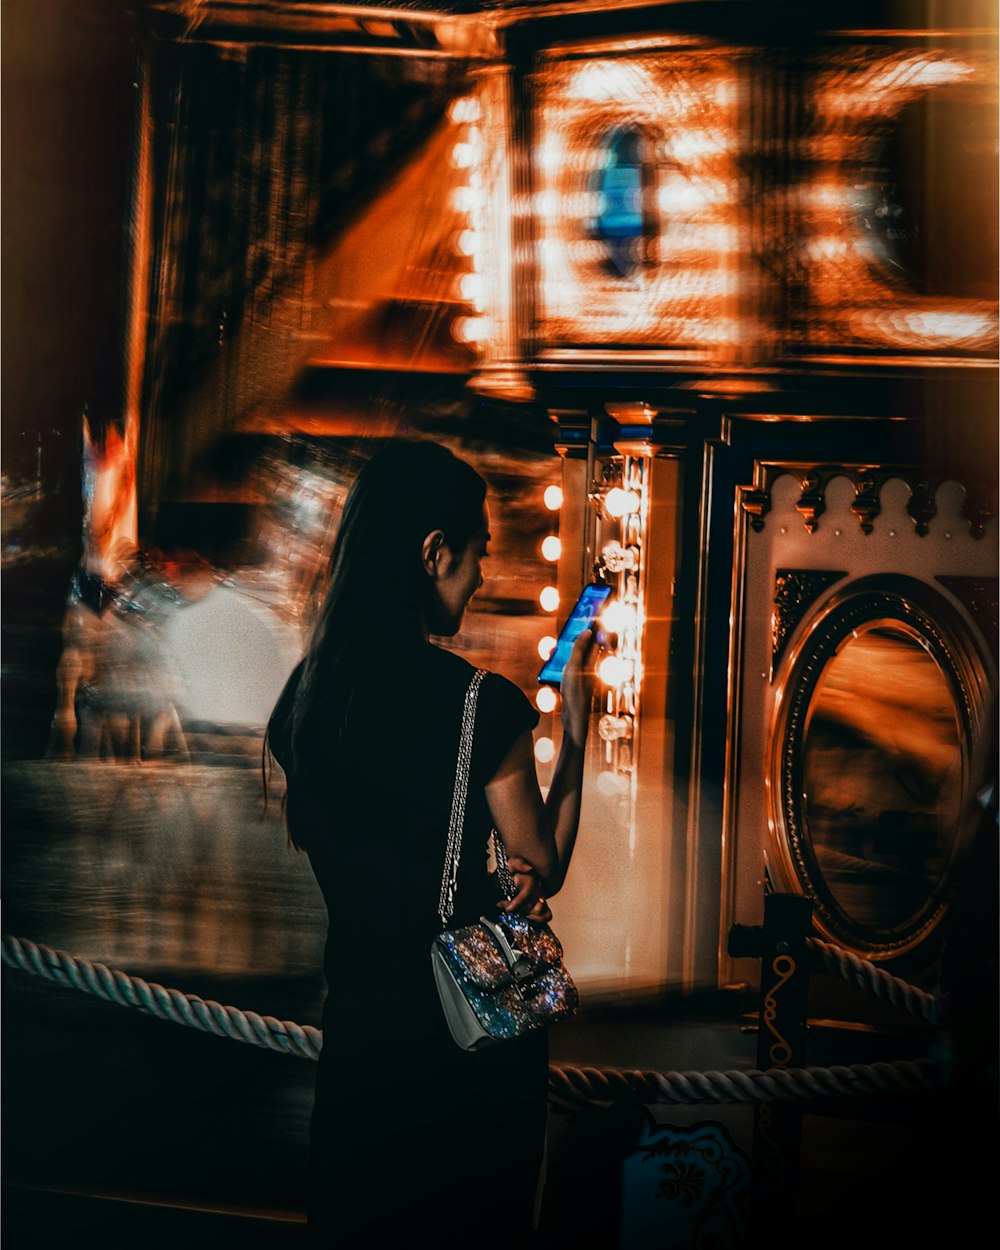 Zeitrafferfotografie einer Frau, die ein Smartphone vor einem Karussell hält